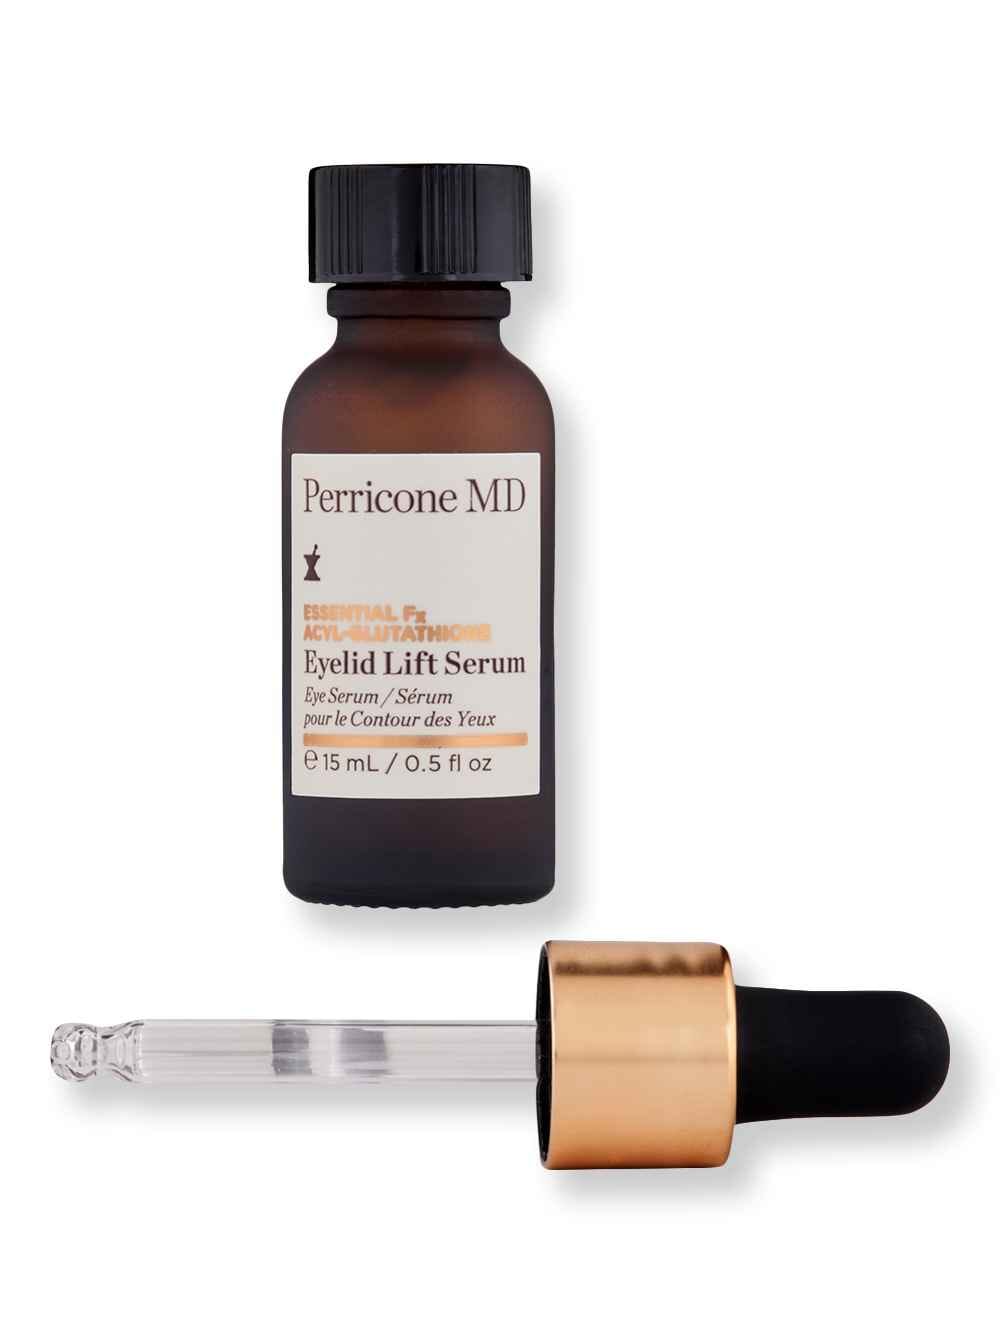 Perricone MD Perricone MD Essential Fx Acyl-Glutathione Eyelid Lift Serum .5 oz15 ml Eye Serums 